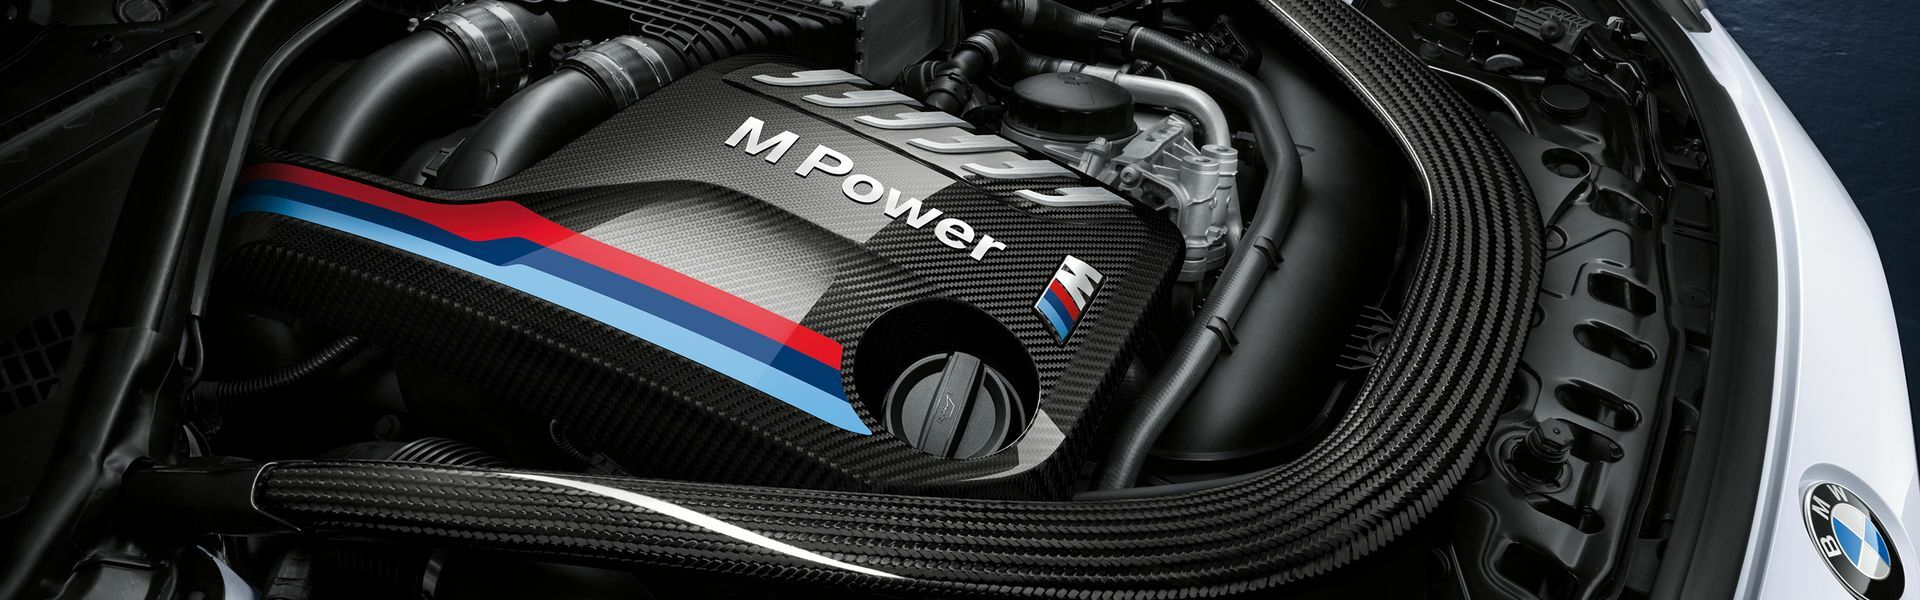 Zvýšení výkonu/ Softwarové úpravy/ Drobné performance díly pro automobil Porsche Boxster 981